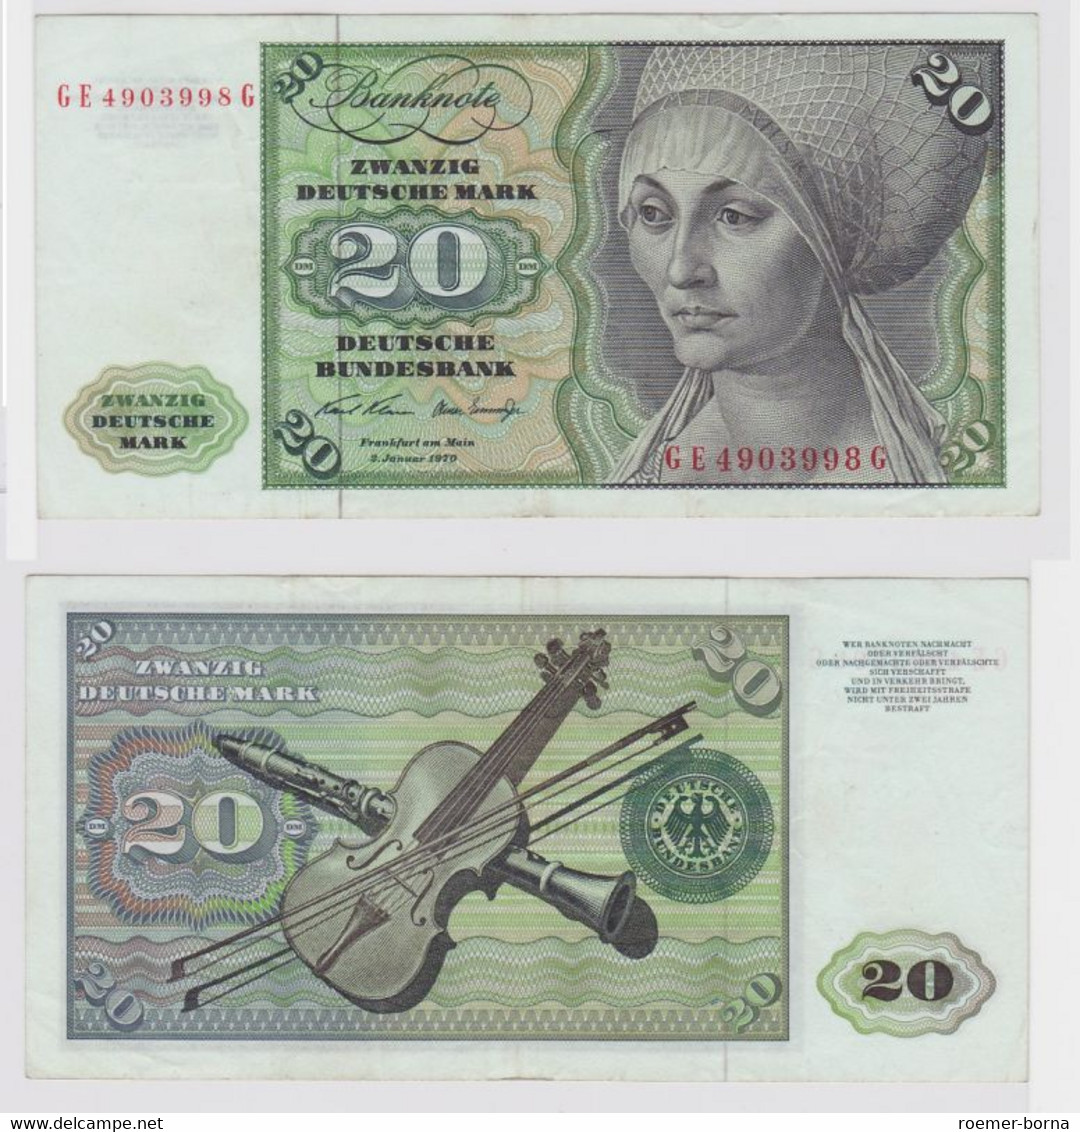 T147955 Banknote 20 DM Deutsche Mark Ro. 271b Schein 2.Jan. 1970 KN GE 4903998 G - 20 DM